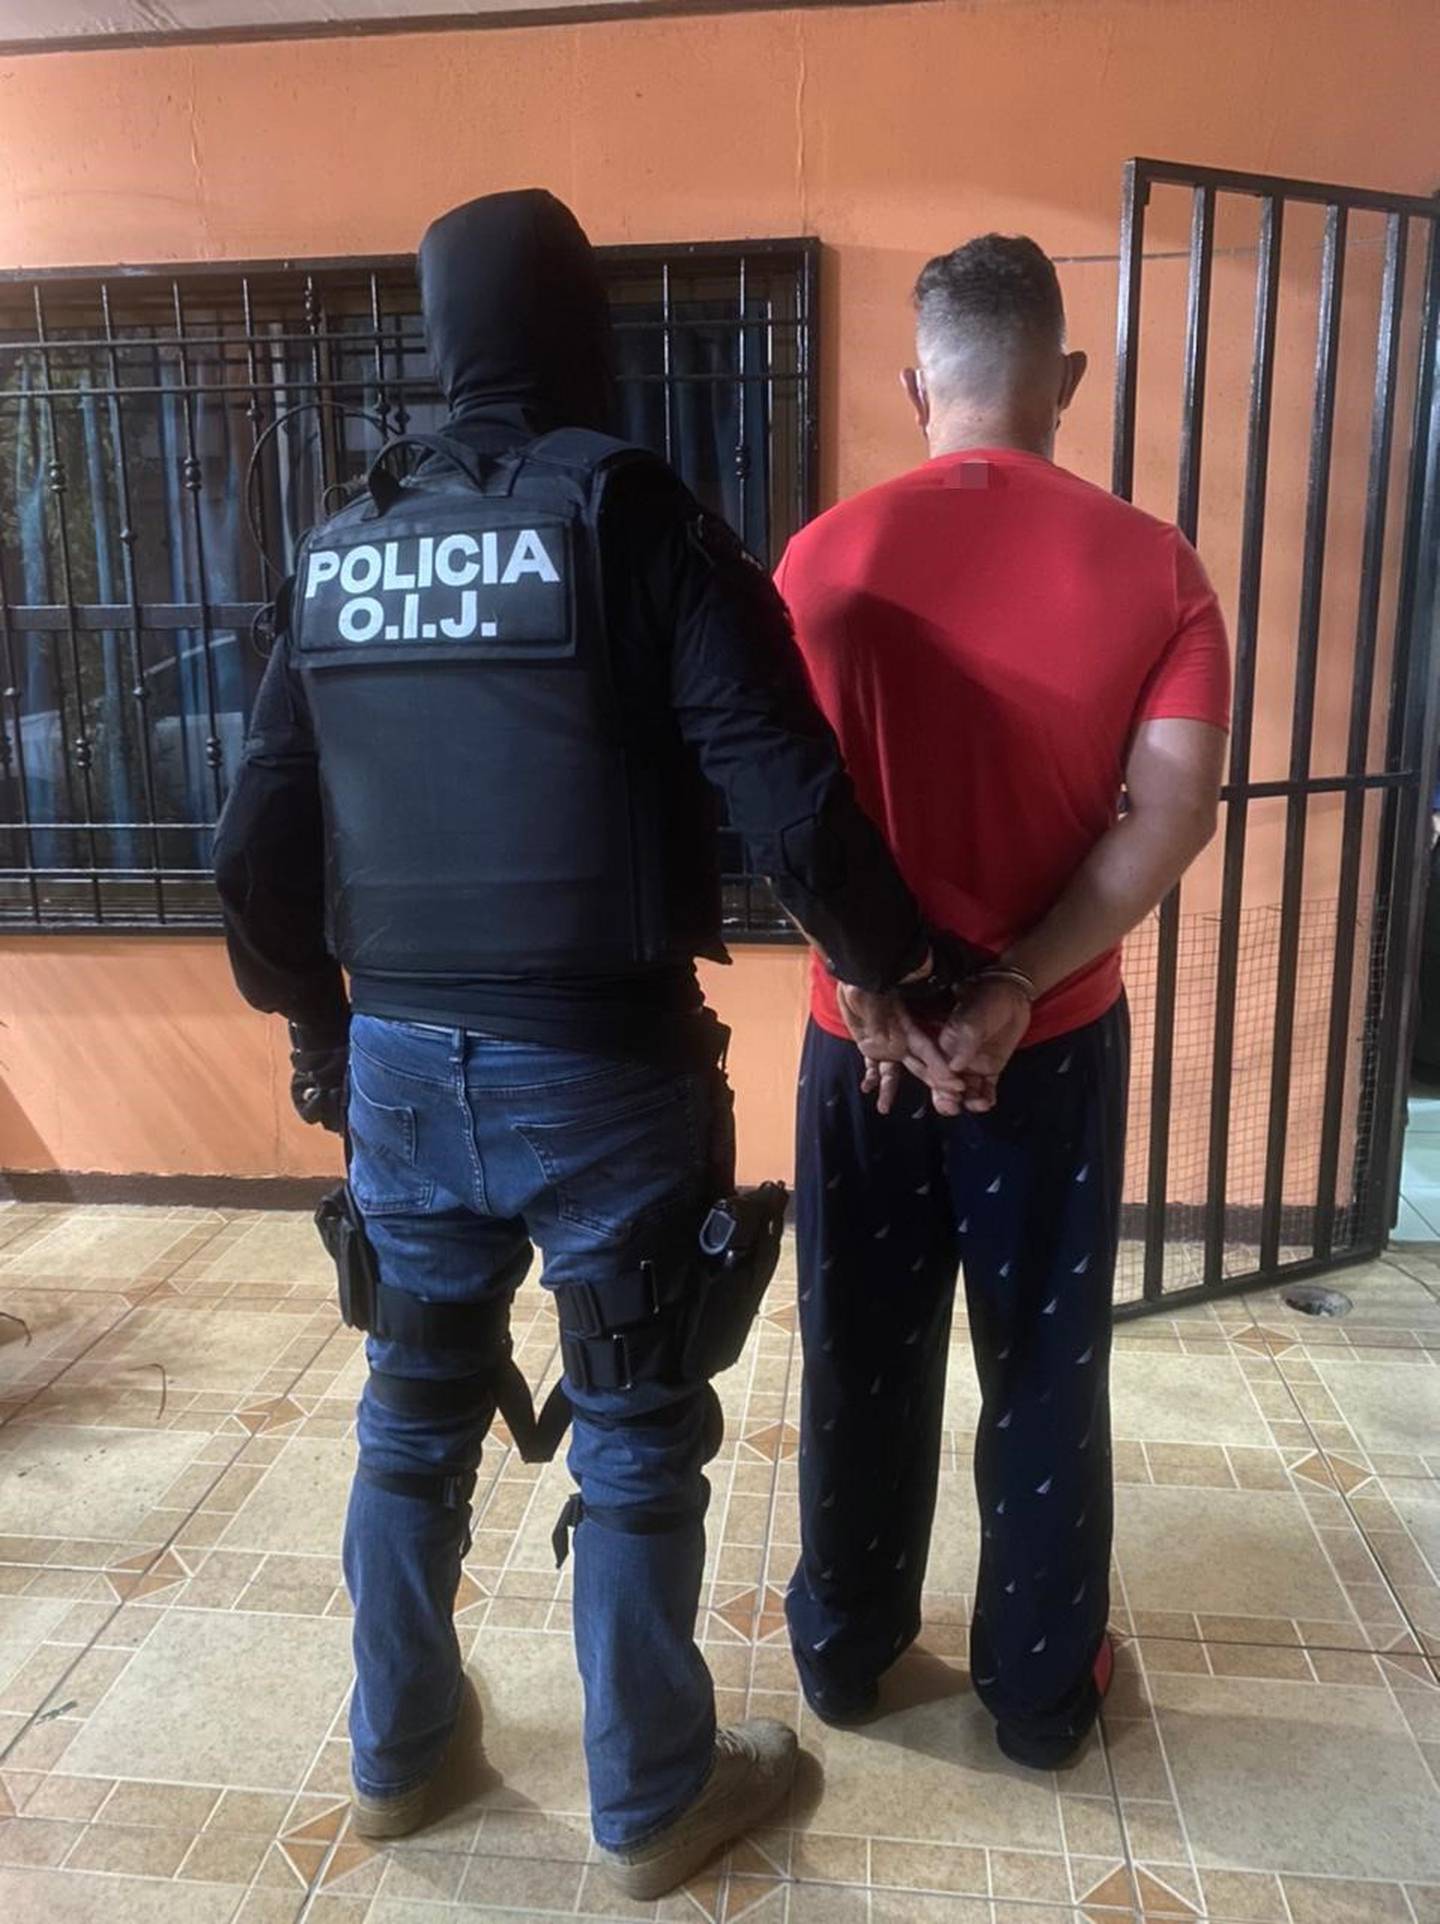 Después de 12 allanamientos, en Limón, este 28 de julio se detuvo al supuesto líder de una banda narco y a 3 integrantes más, como sospechosos de dedicarse a lavar el dinero que les llegaba por la venta de drogas.